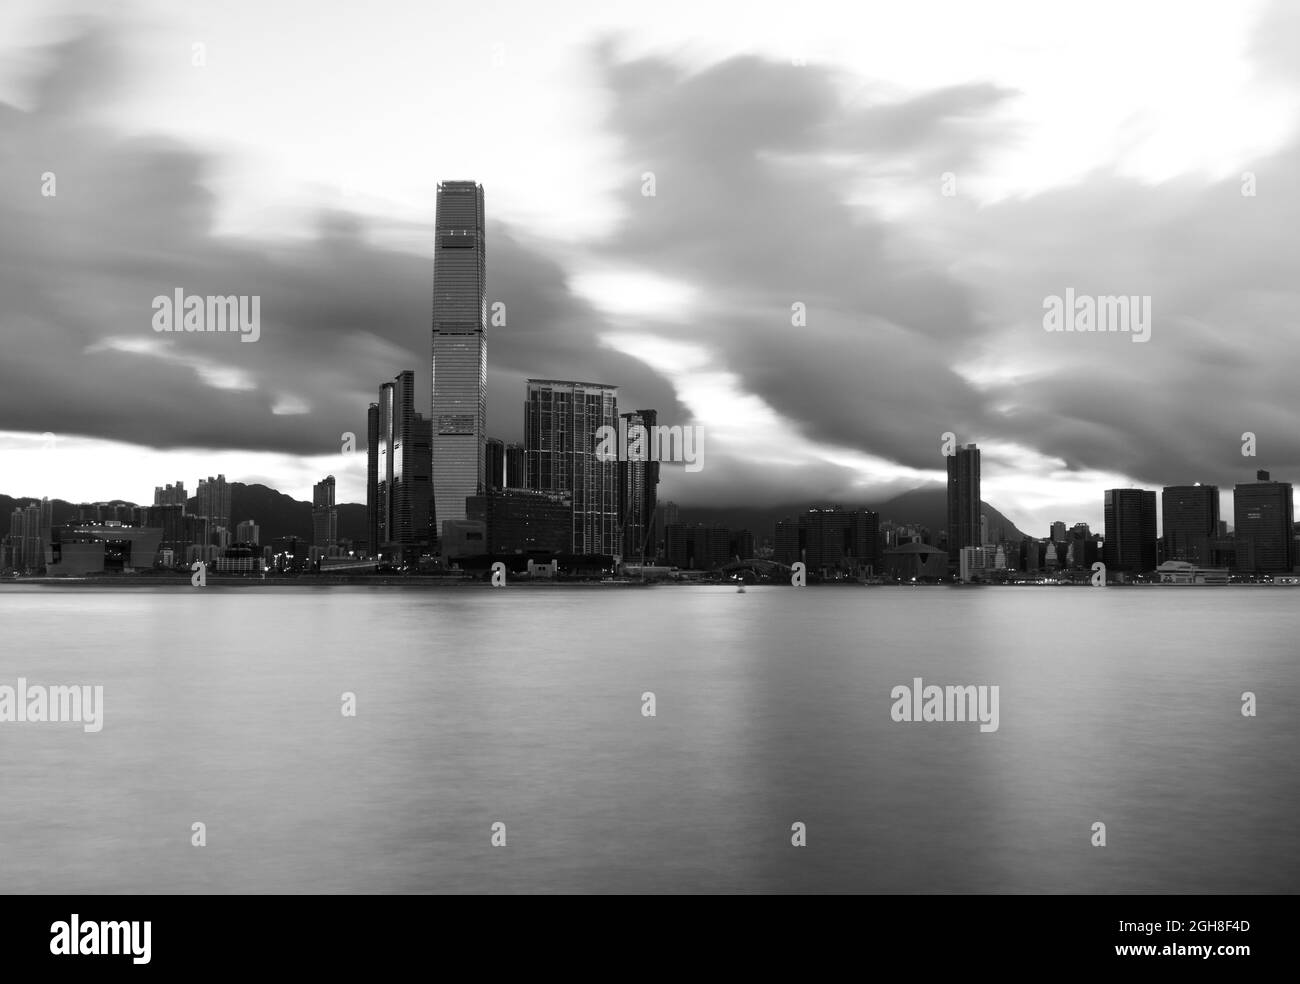 Foto in bianco e nero scattata dall'isola di Hong Kong guardando attraverso Victoria Harbour a Kowloon e al grattacielo ICC. La lunga esposizione dà il mare serico. Foto Stock